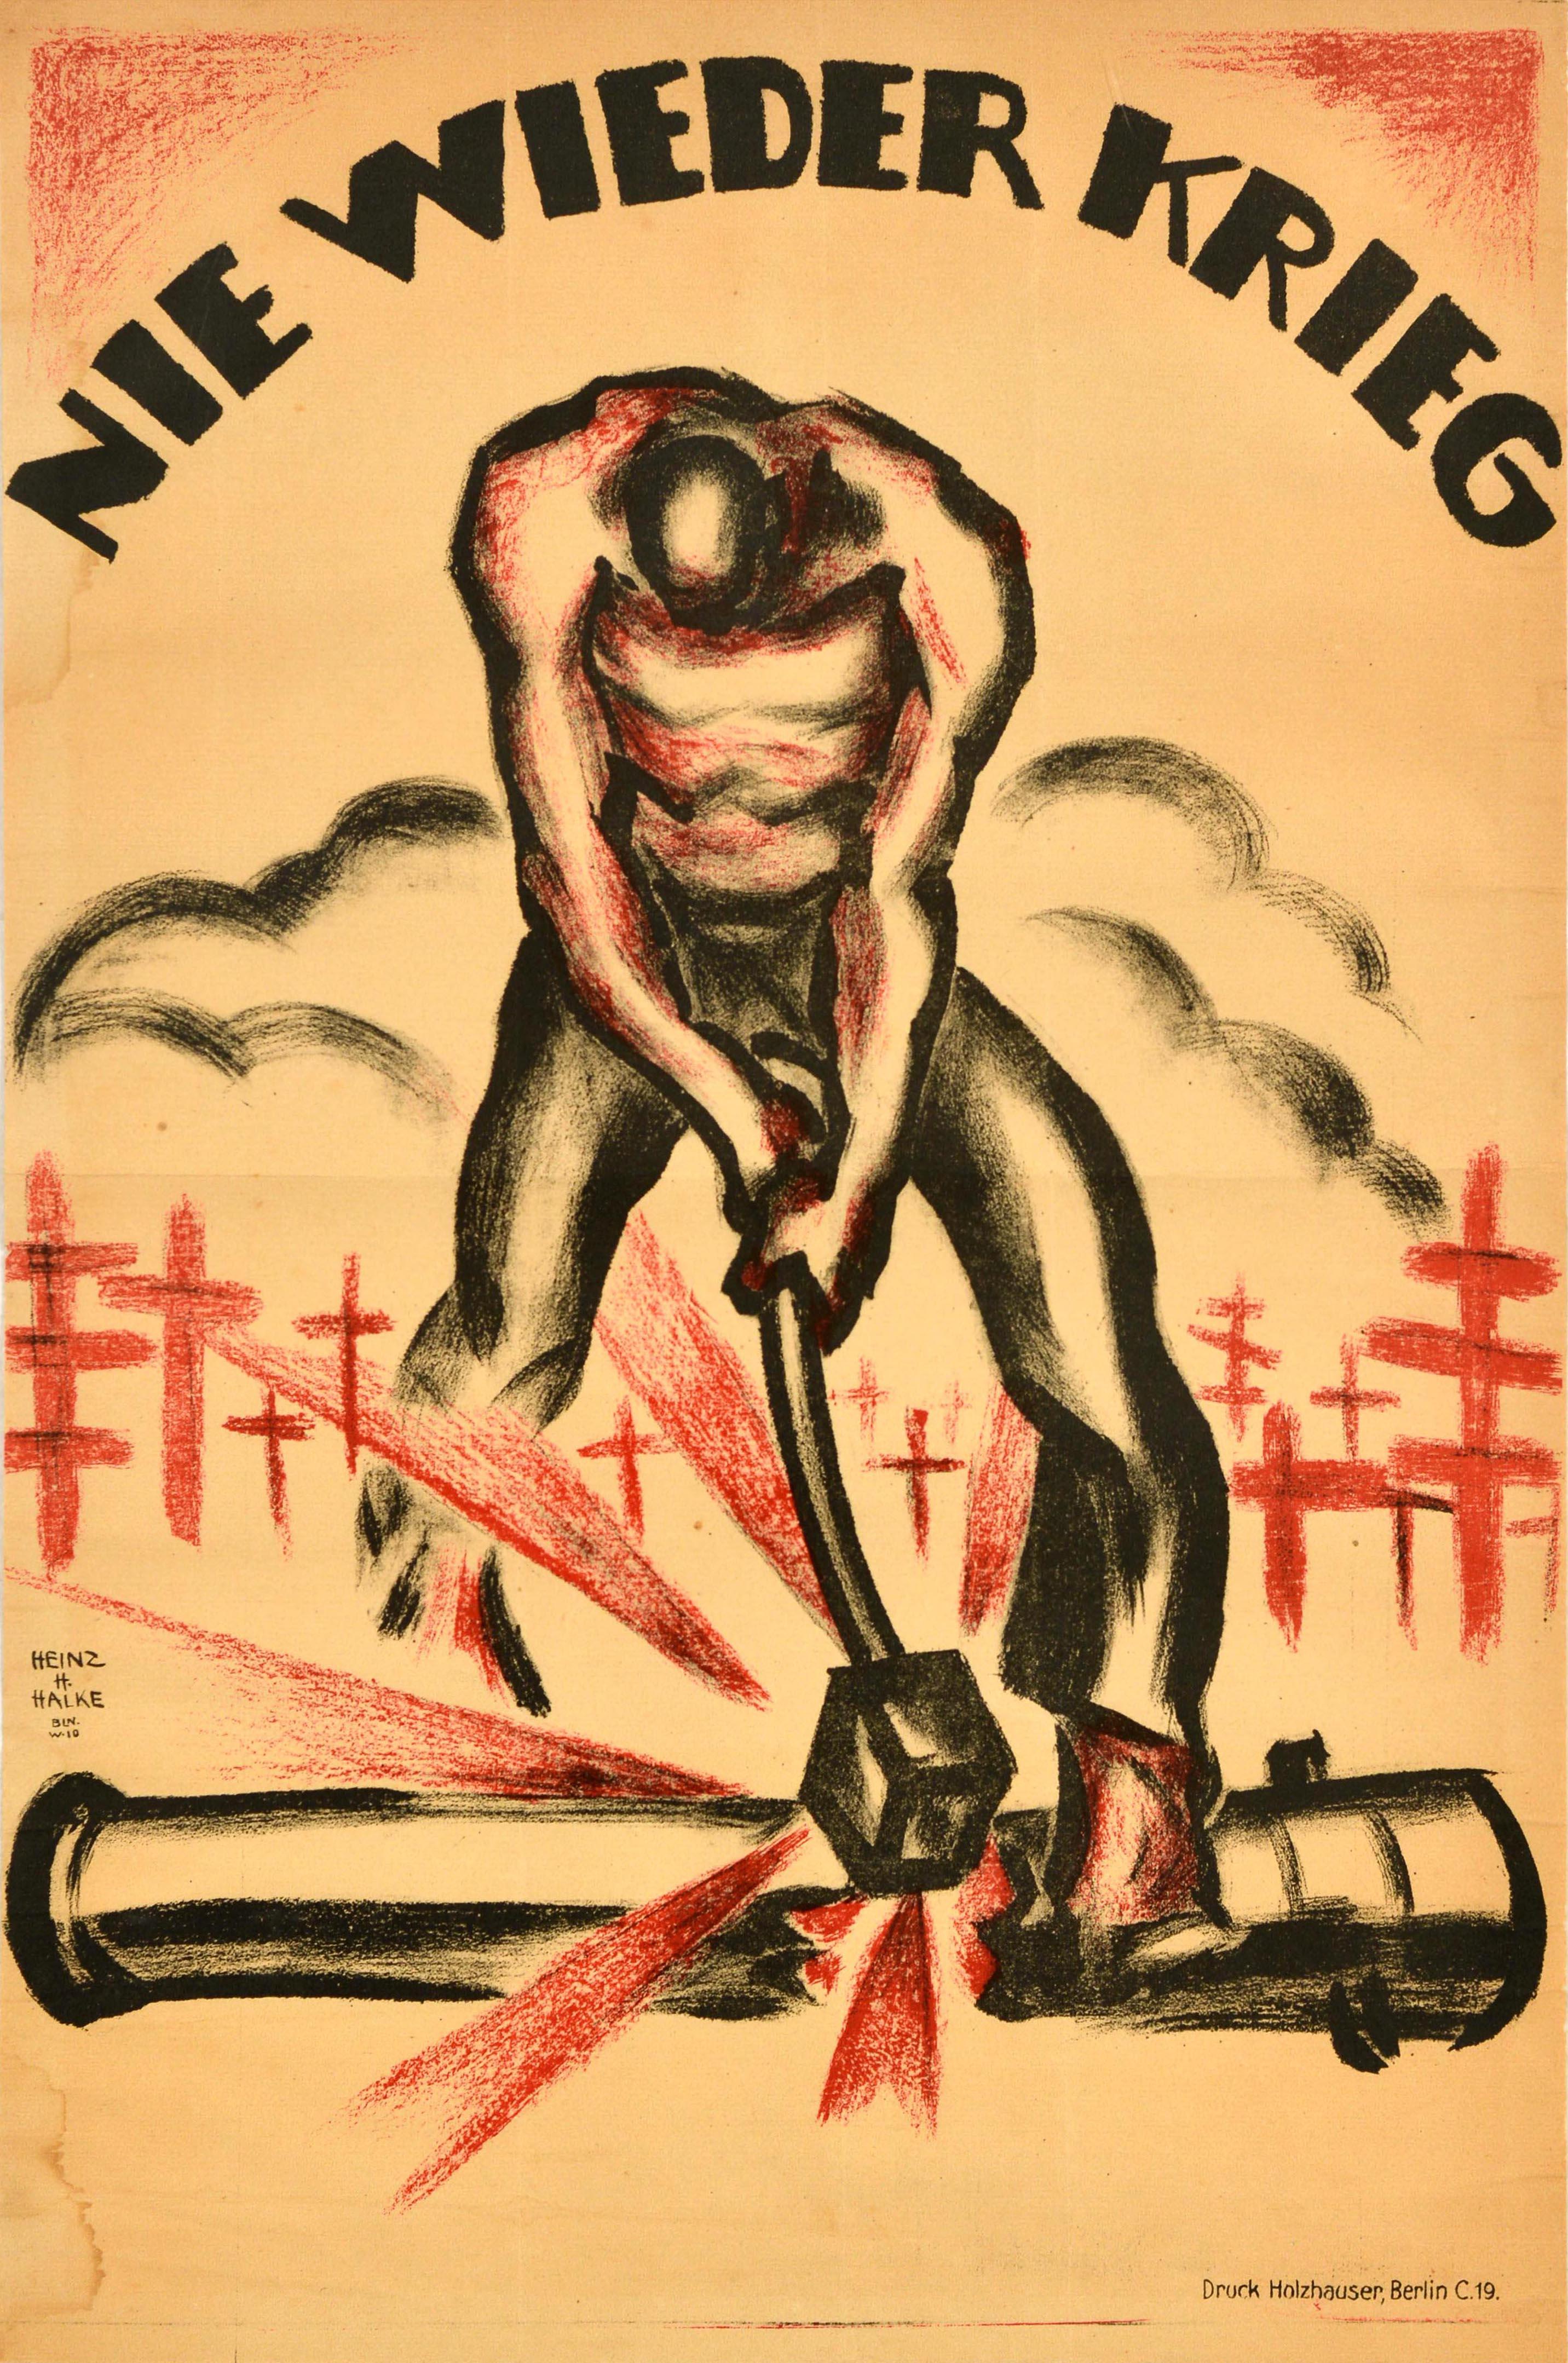 Heinz H Halke Print - Original Antique WWI Poster Nie Wieder Krieg Never Again War Grave Cannon Strike